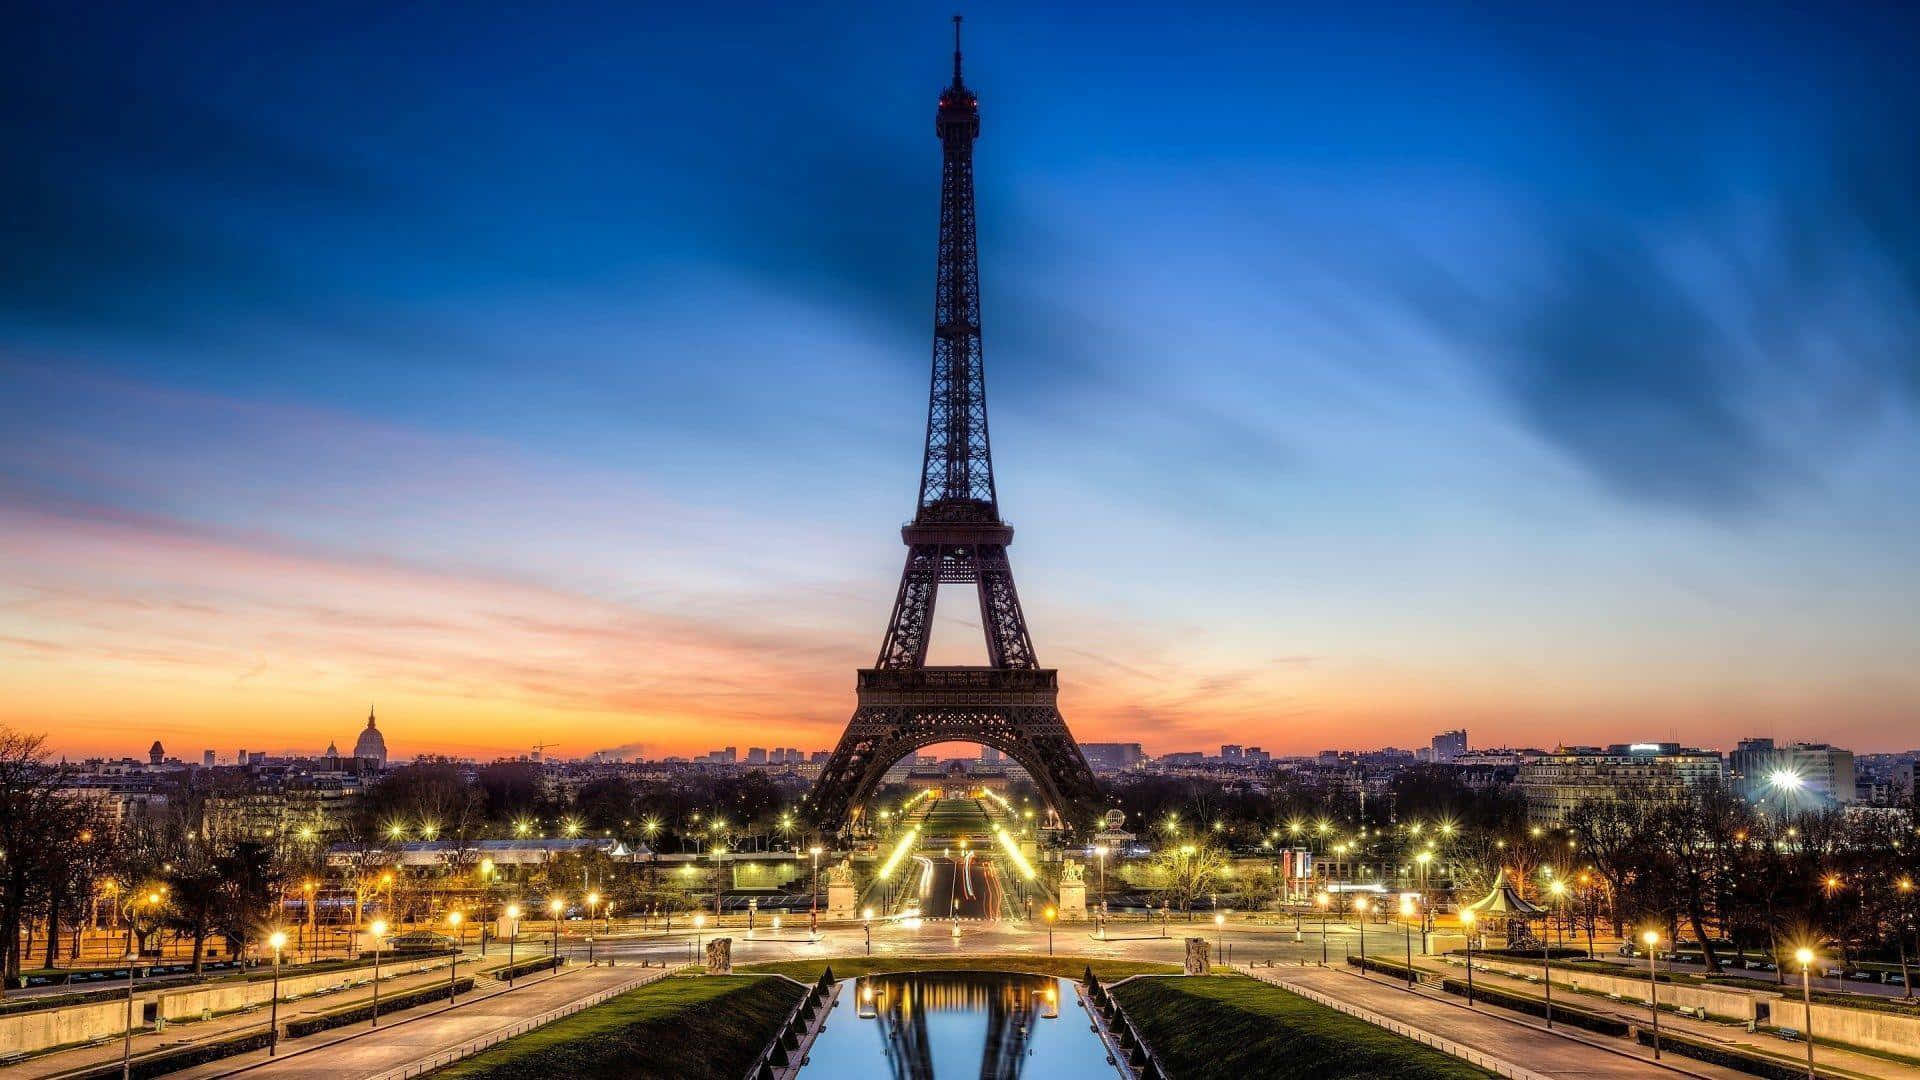 Enikonisk Udsigt Over Eiffeltårnet Mod En Klar Himmel.